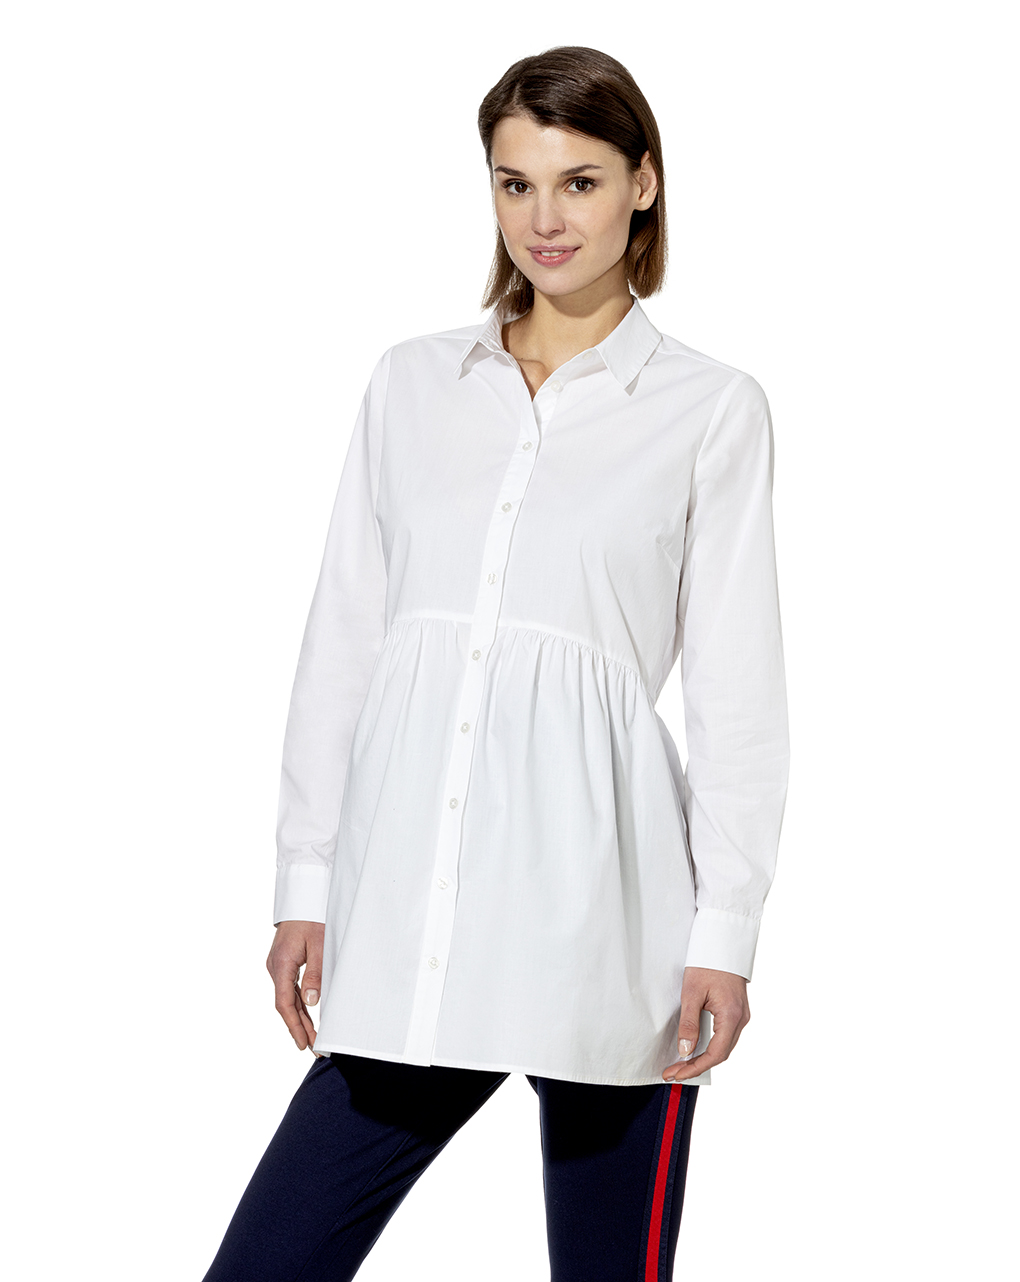 γυναικείο πουκάμισο κλασικό μακρύ λευκό - Prénatal